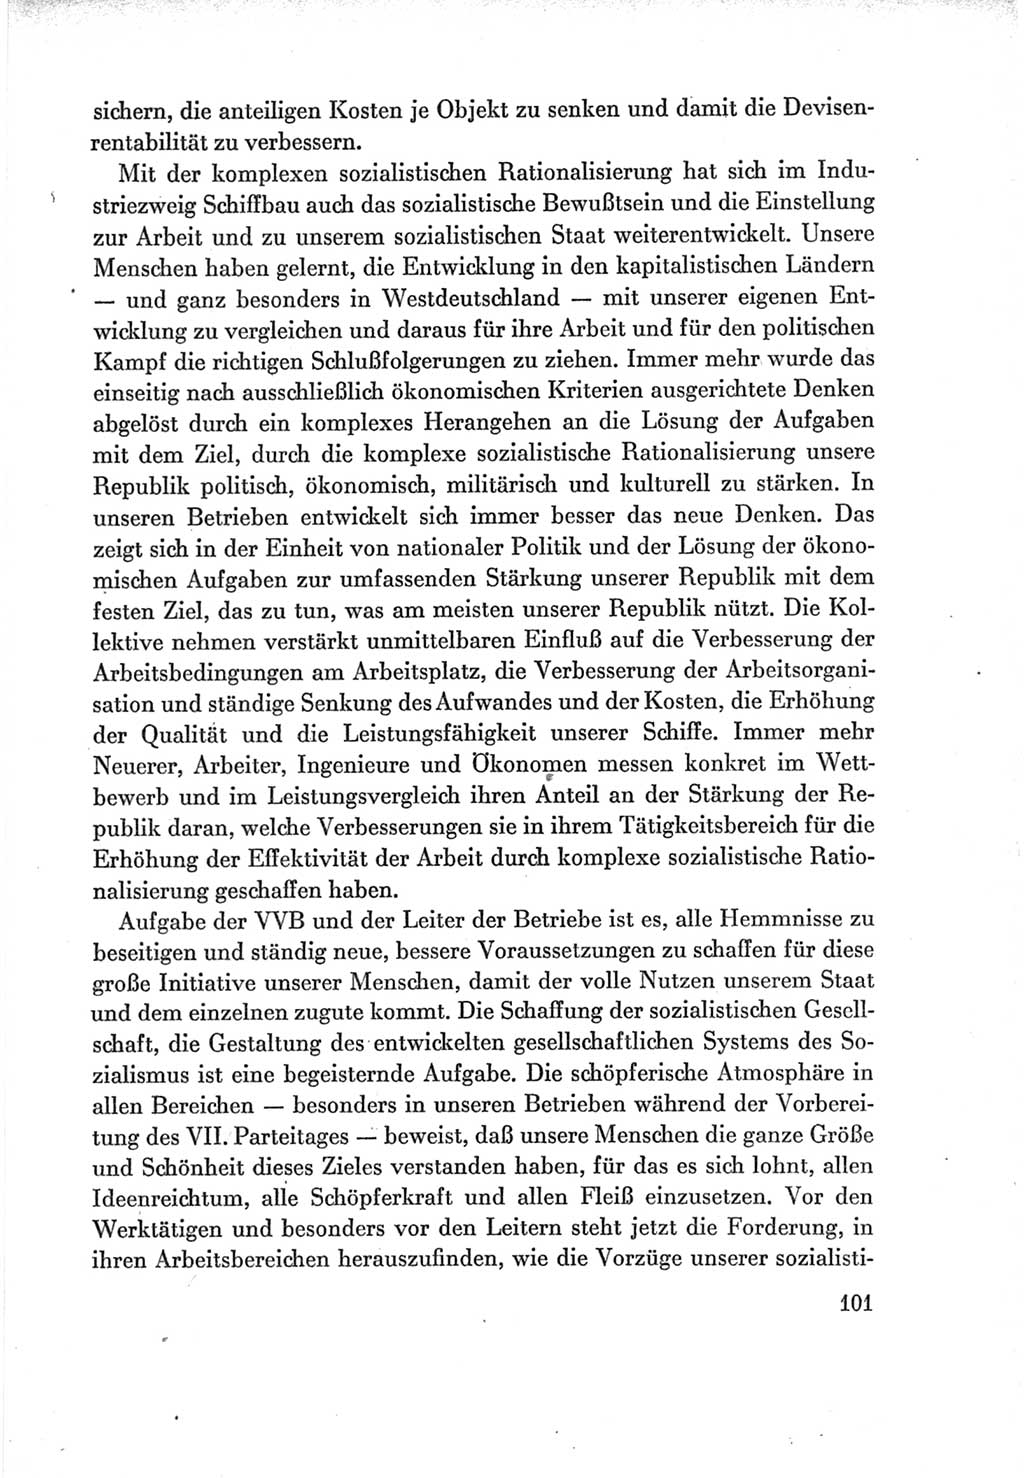 Protokoll der Verhandlungen des Ⅶ. Parteitages der Sozialistischen Einheitspartei Deutschlands (SED) [Deutsche Demokratische Republik (DDR)] 1967, Band Ⅲ, Seite 101 (Prot. Verh. Ⅶ. PT SED DDR 1967, Bd. Ⅲ, S. 101)